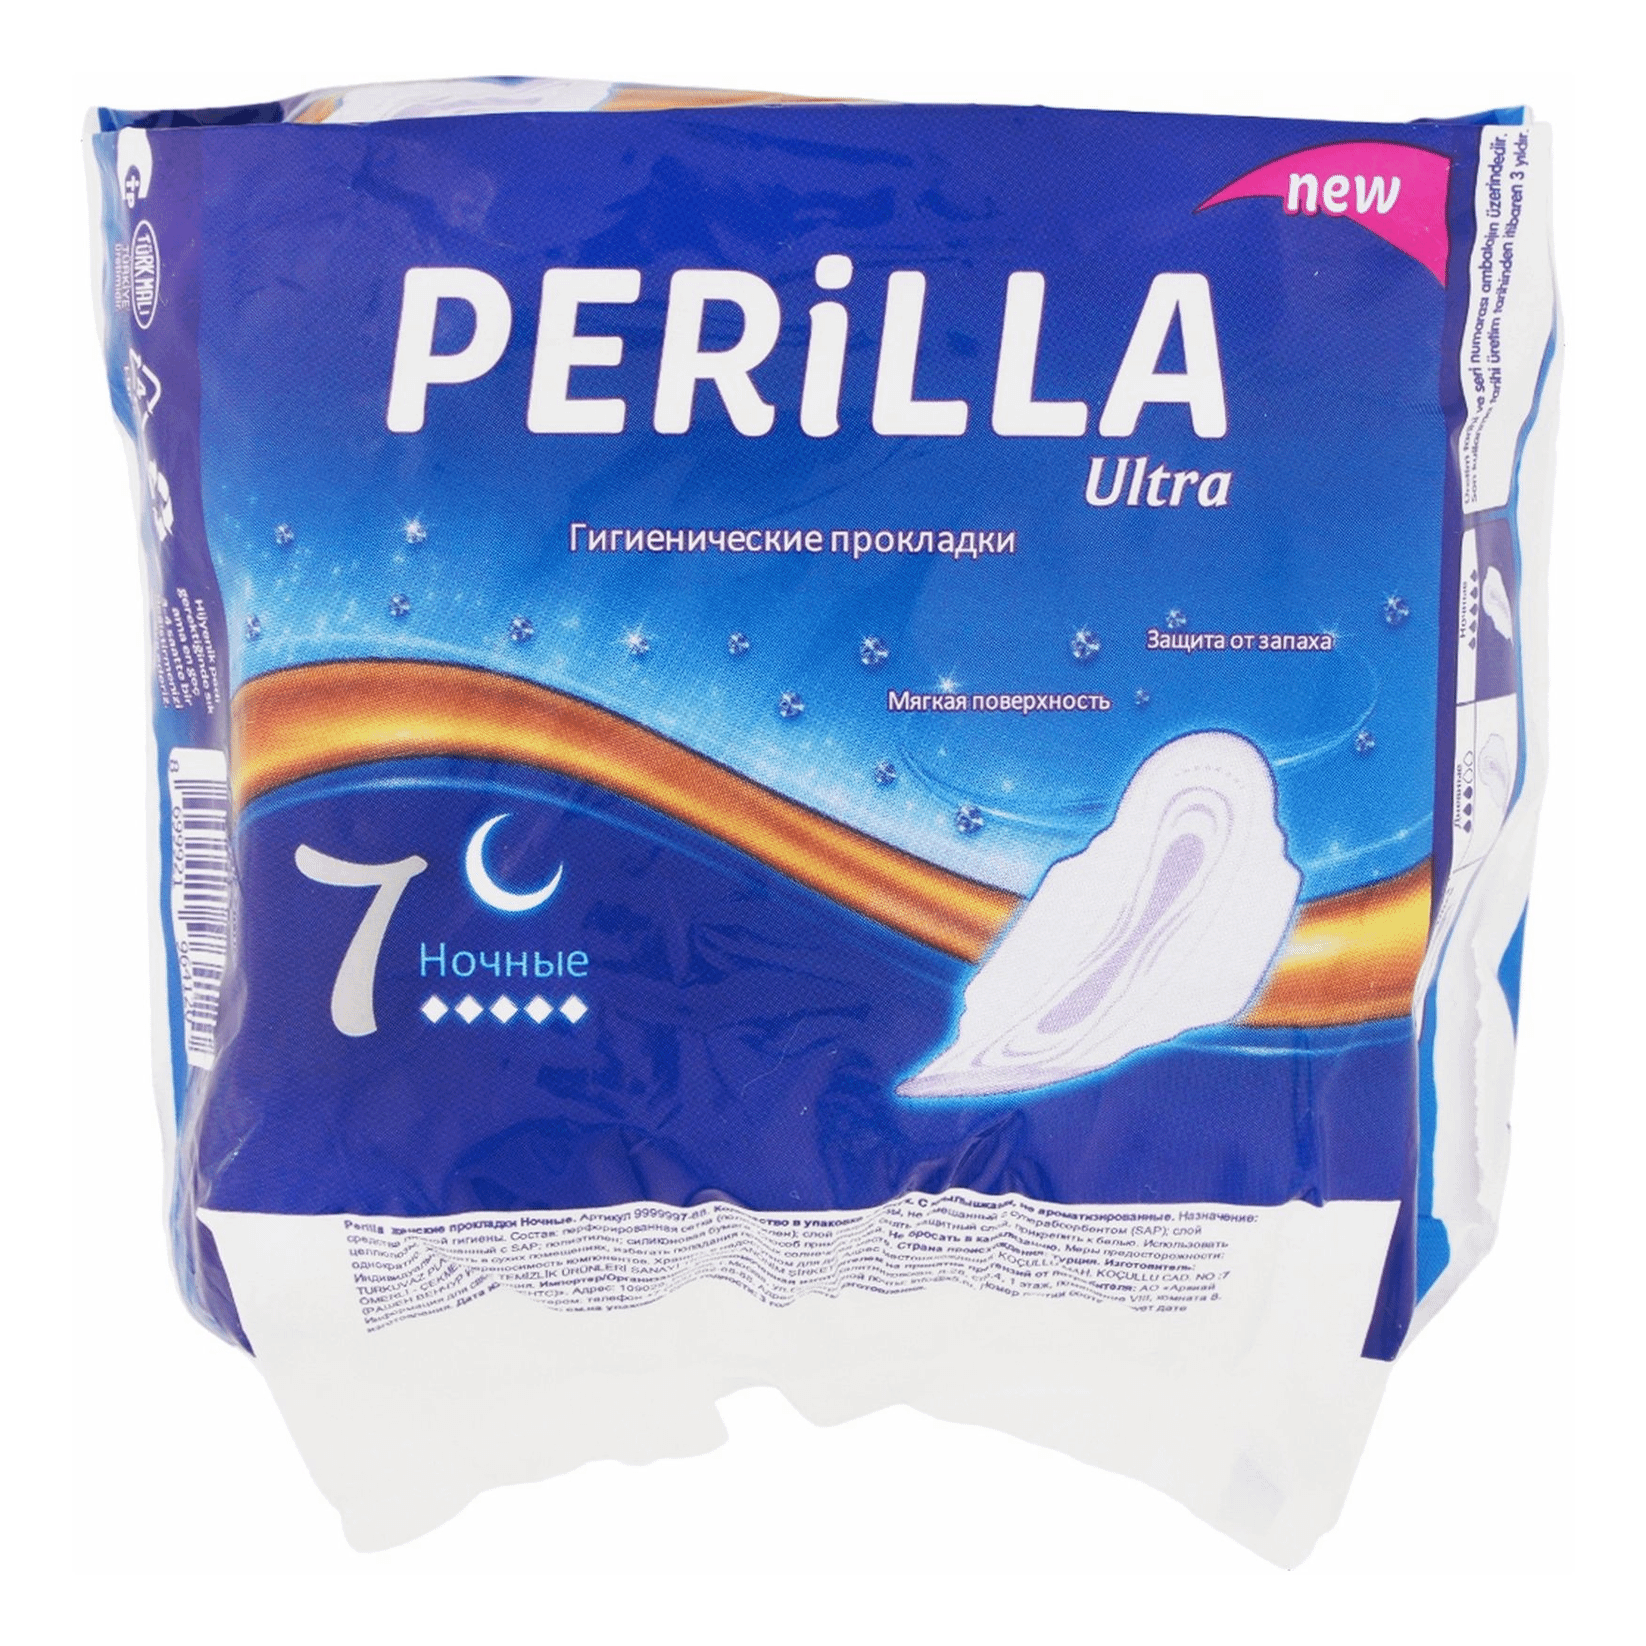 Прокладки женские гигиенические Perilla Ночные 7 шт.